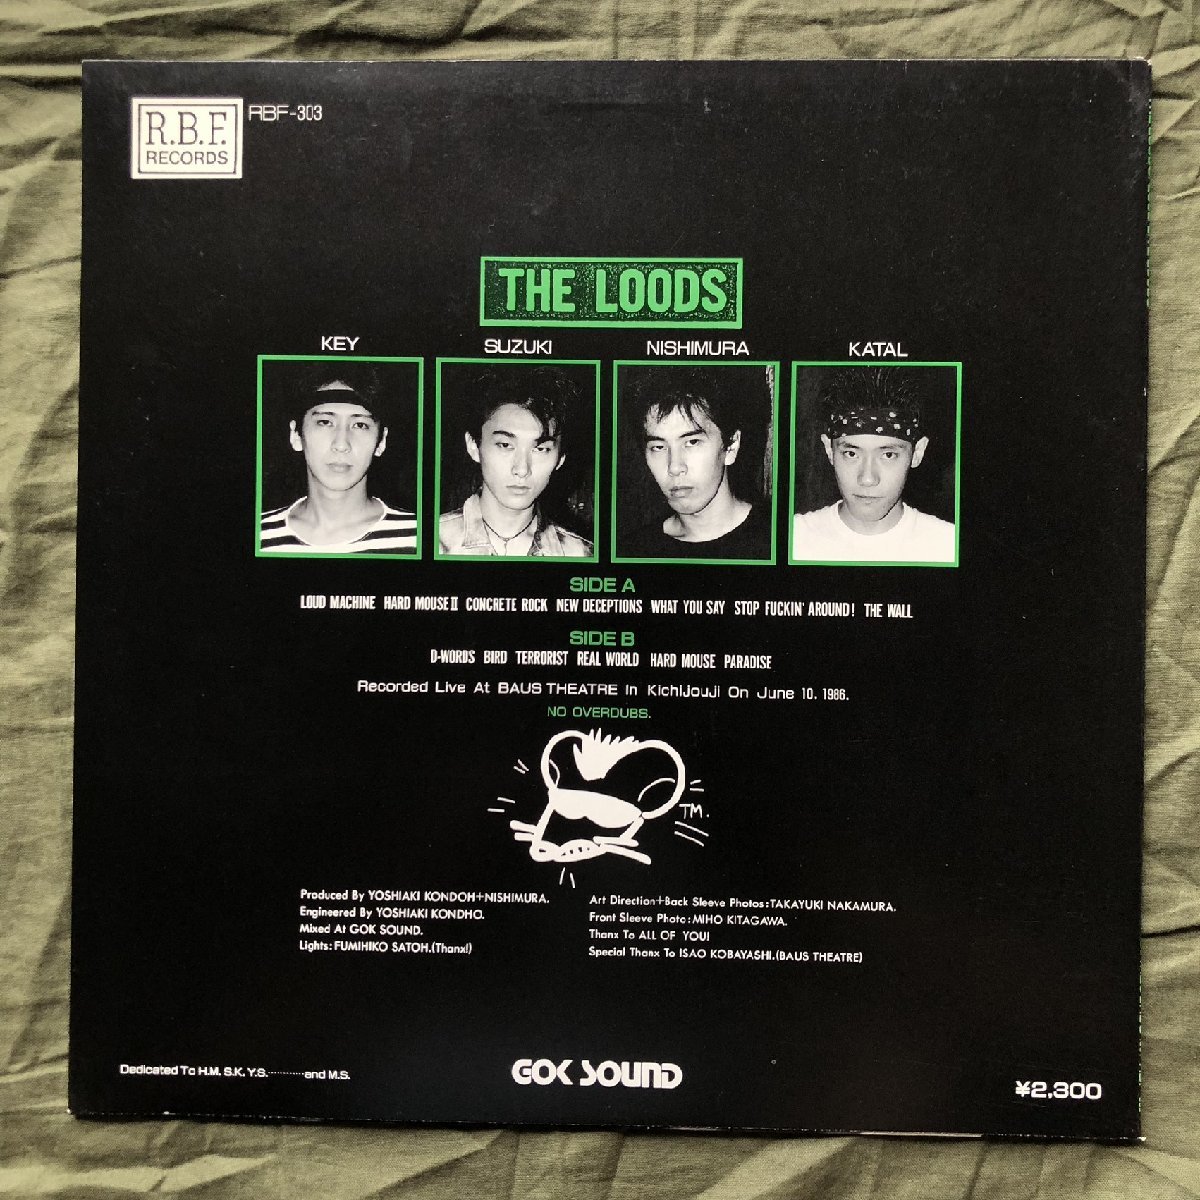 美盤 良ジャケ 1986年 オリジナルリリース盤 ルーズ Loods LPレコード ラウド・ライヴ Loud Live J-Rock 西村茂樹 鈴木浩司 Loud Machine_画像2